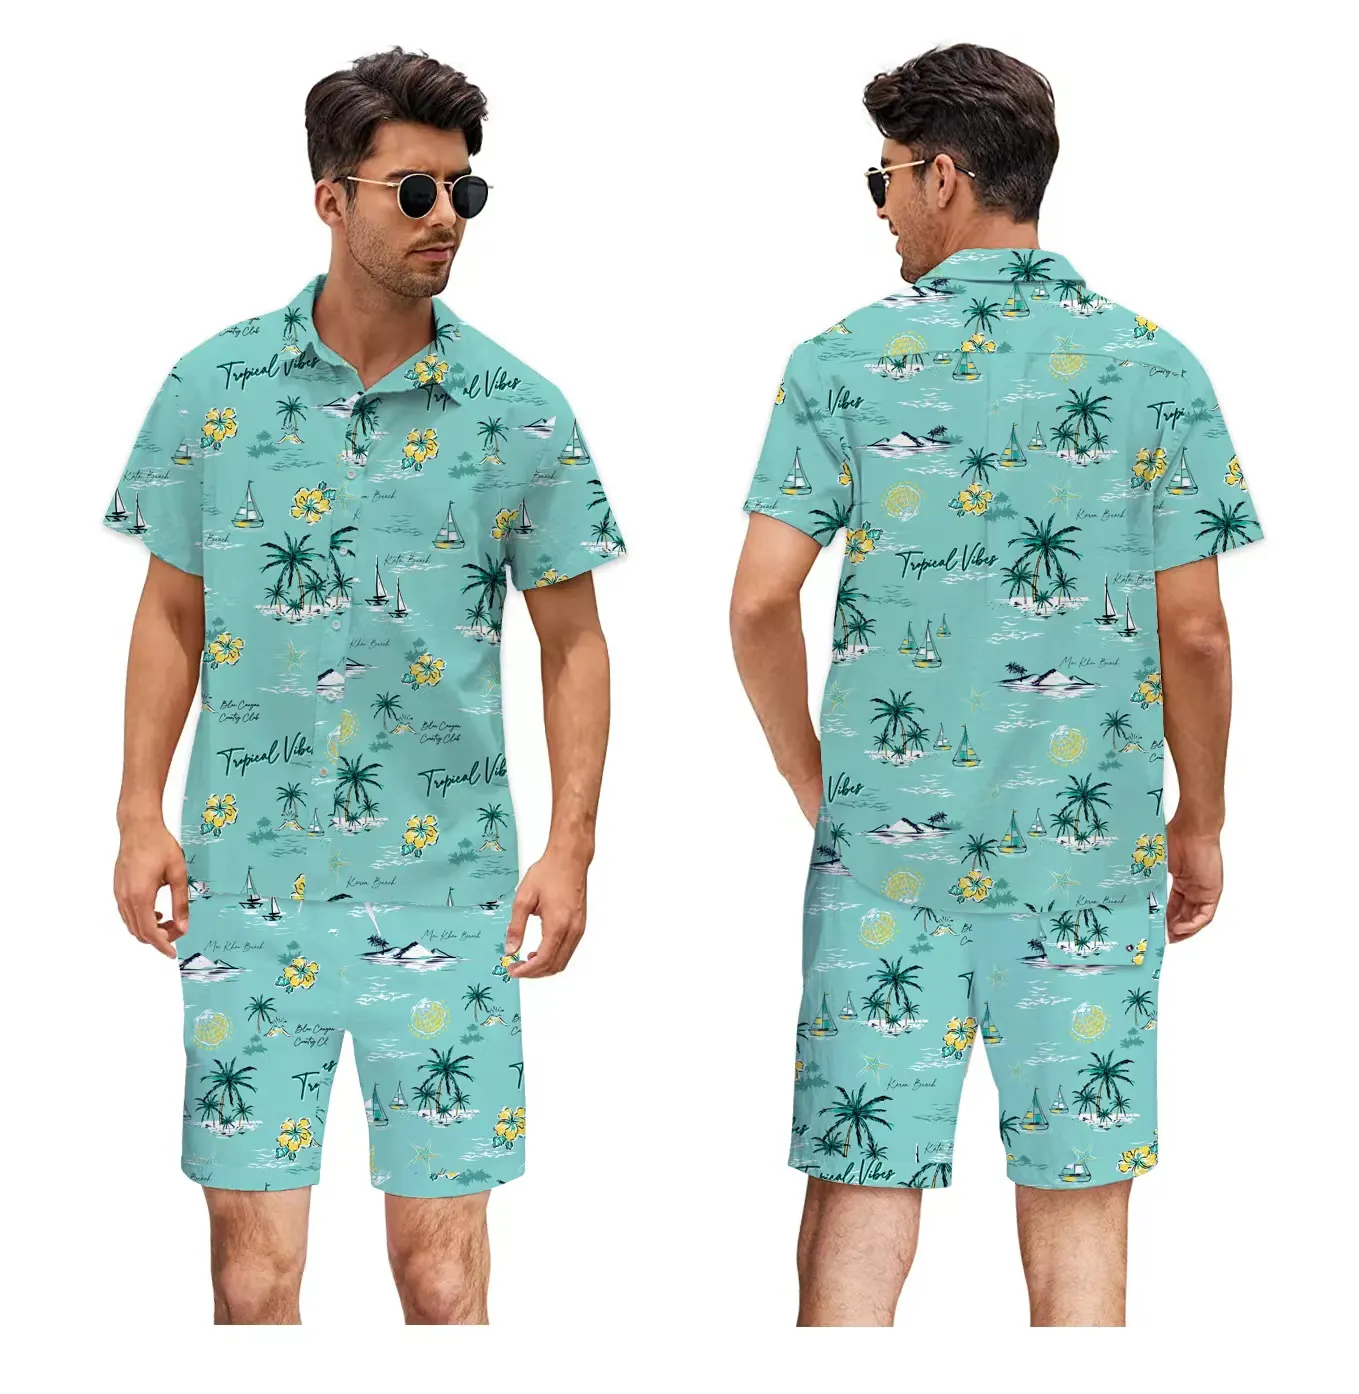 Chaoqi-Marke Großhandel hohe Qualität Hawaii-Hemden benutzerdefiniert Feiertag Druck Herren blumighemd und kurzer Satz